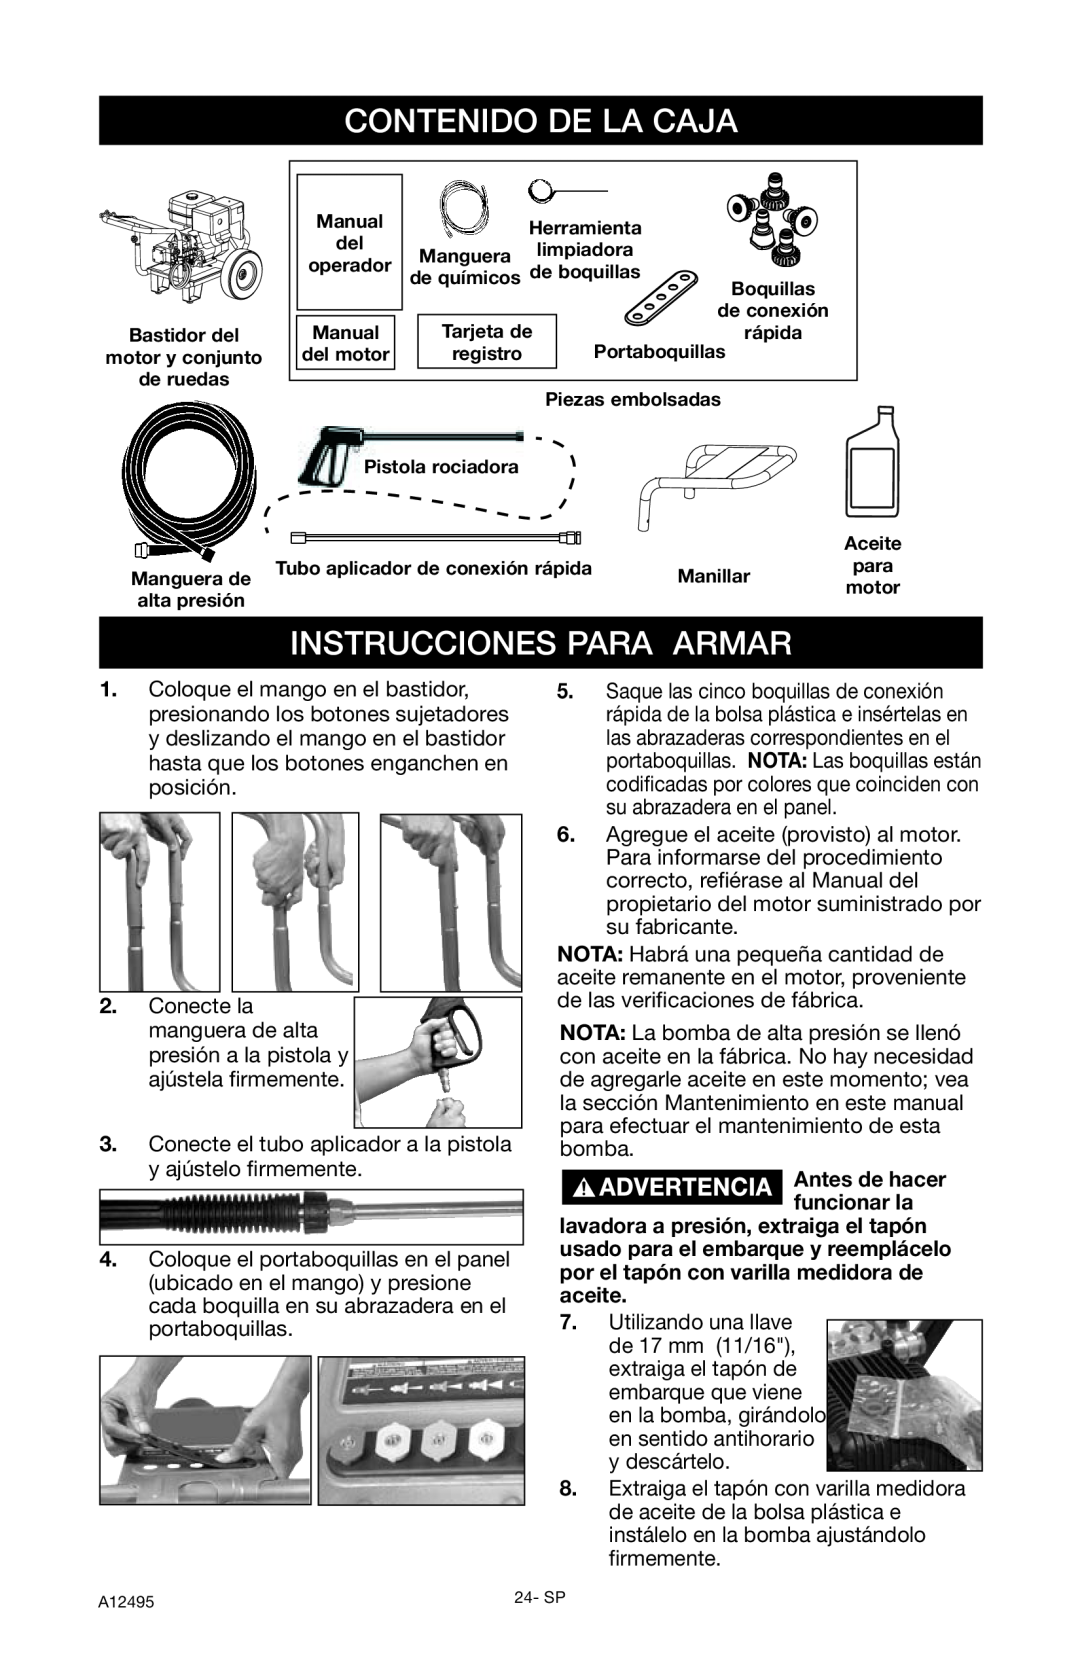 DeVillbiss Air Power Company PWH3635, A12495 operation manual Contenido De La Caja, Instrucciones Para Armar 